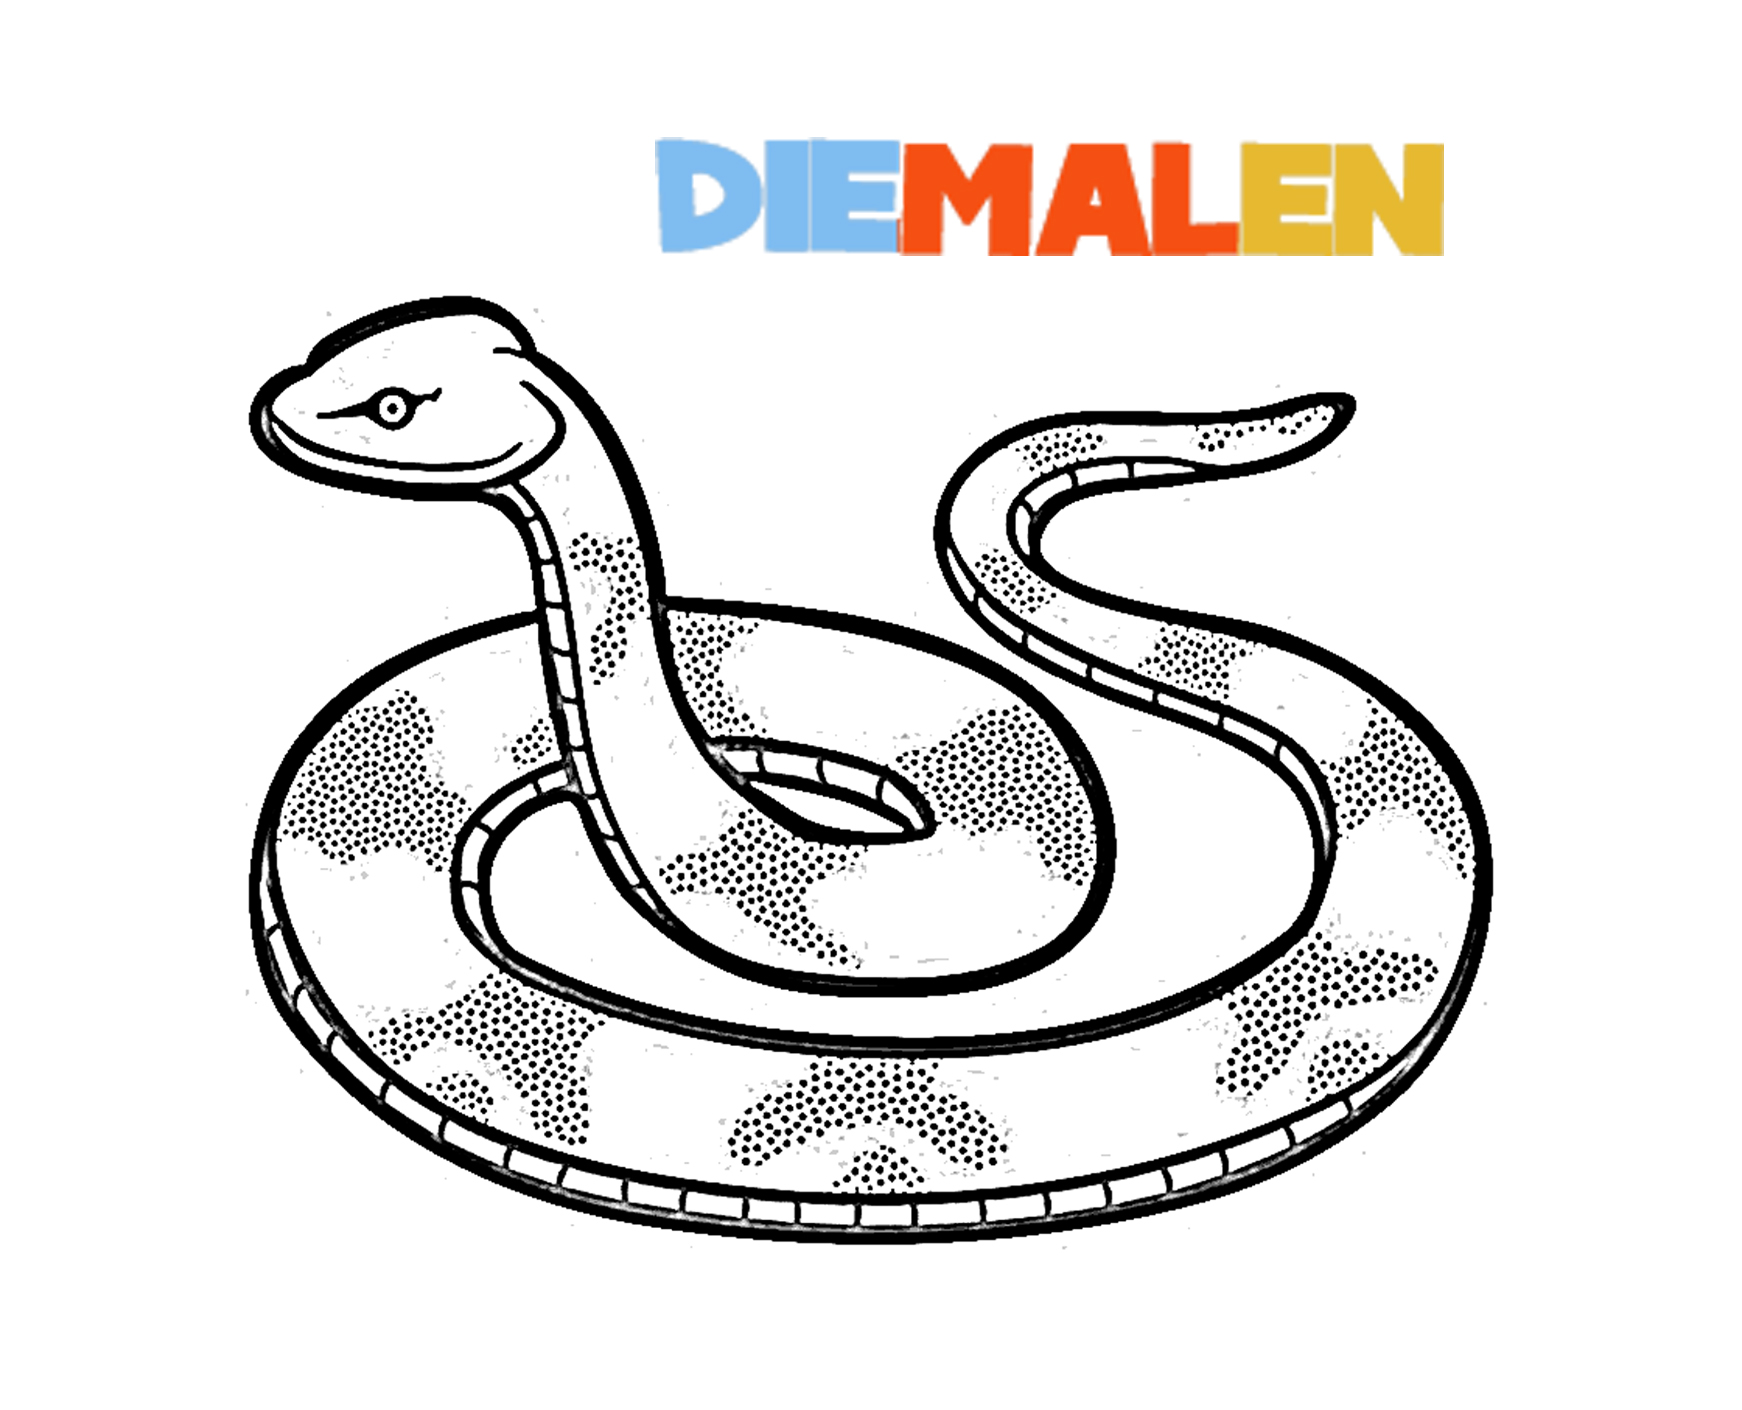 Schlange Ausmalbilder → DieMalen.com